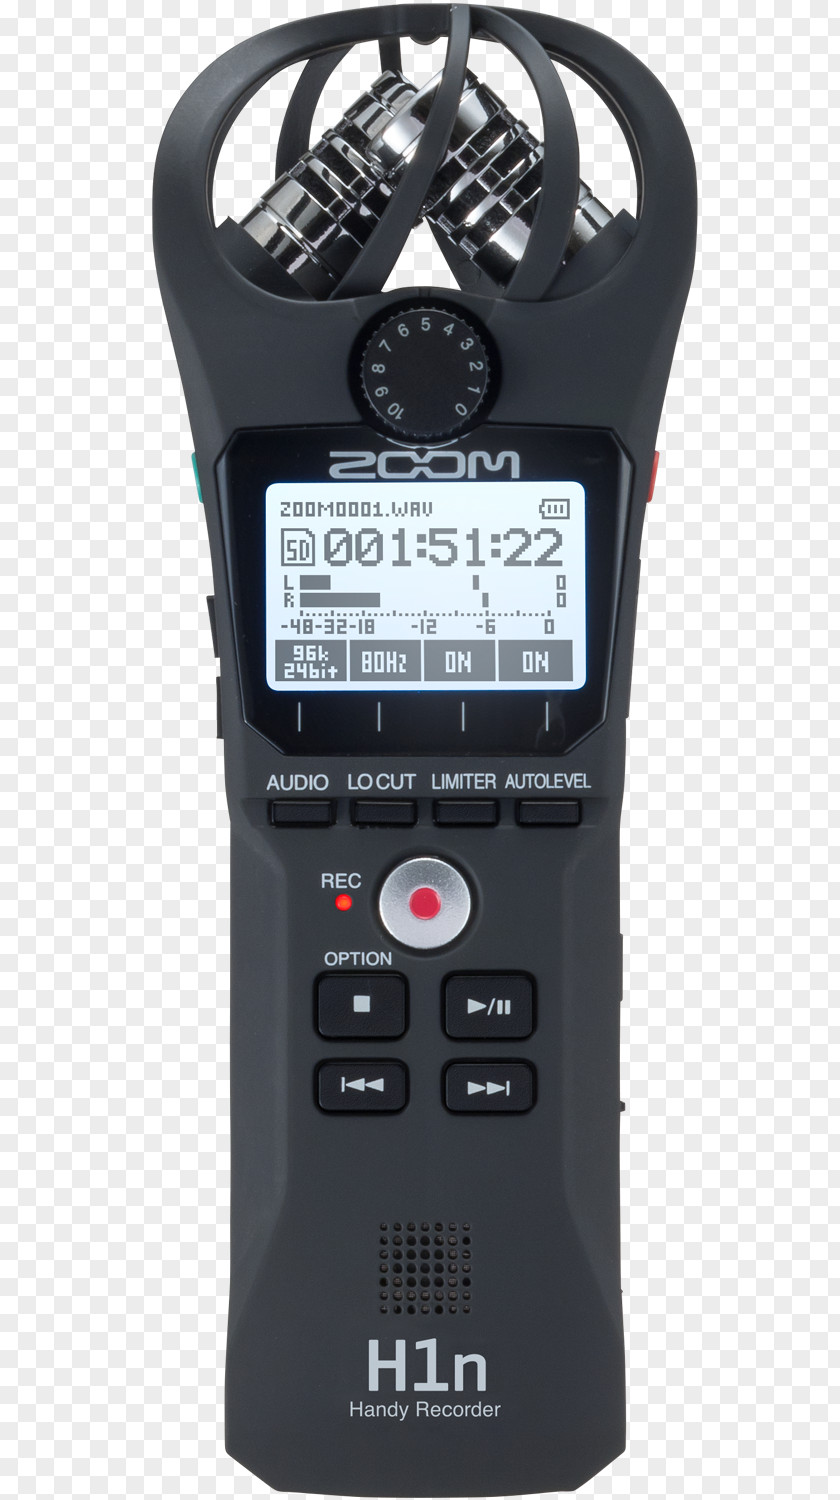 Microphone Digital Audio Zoom H1n Handy Recorder H4n PNG